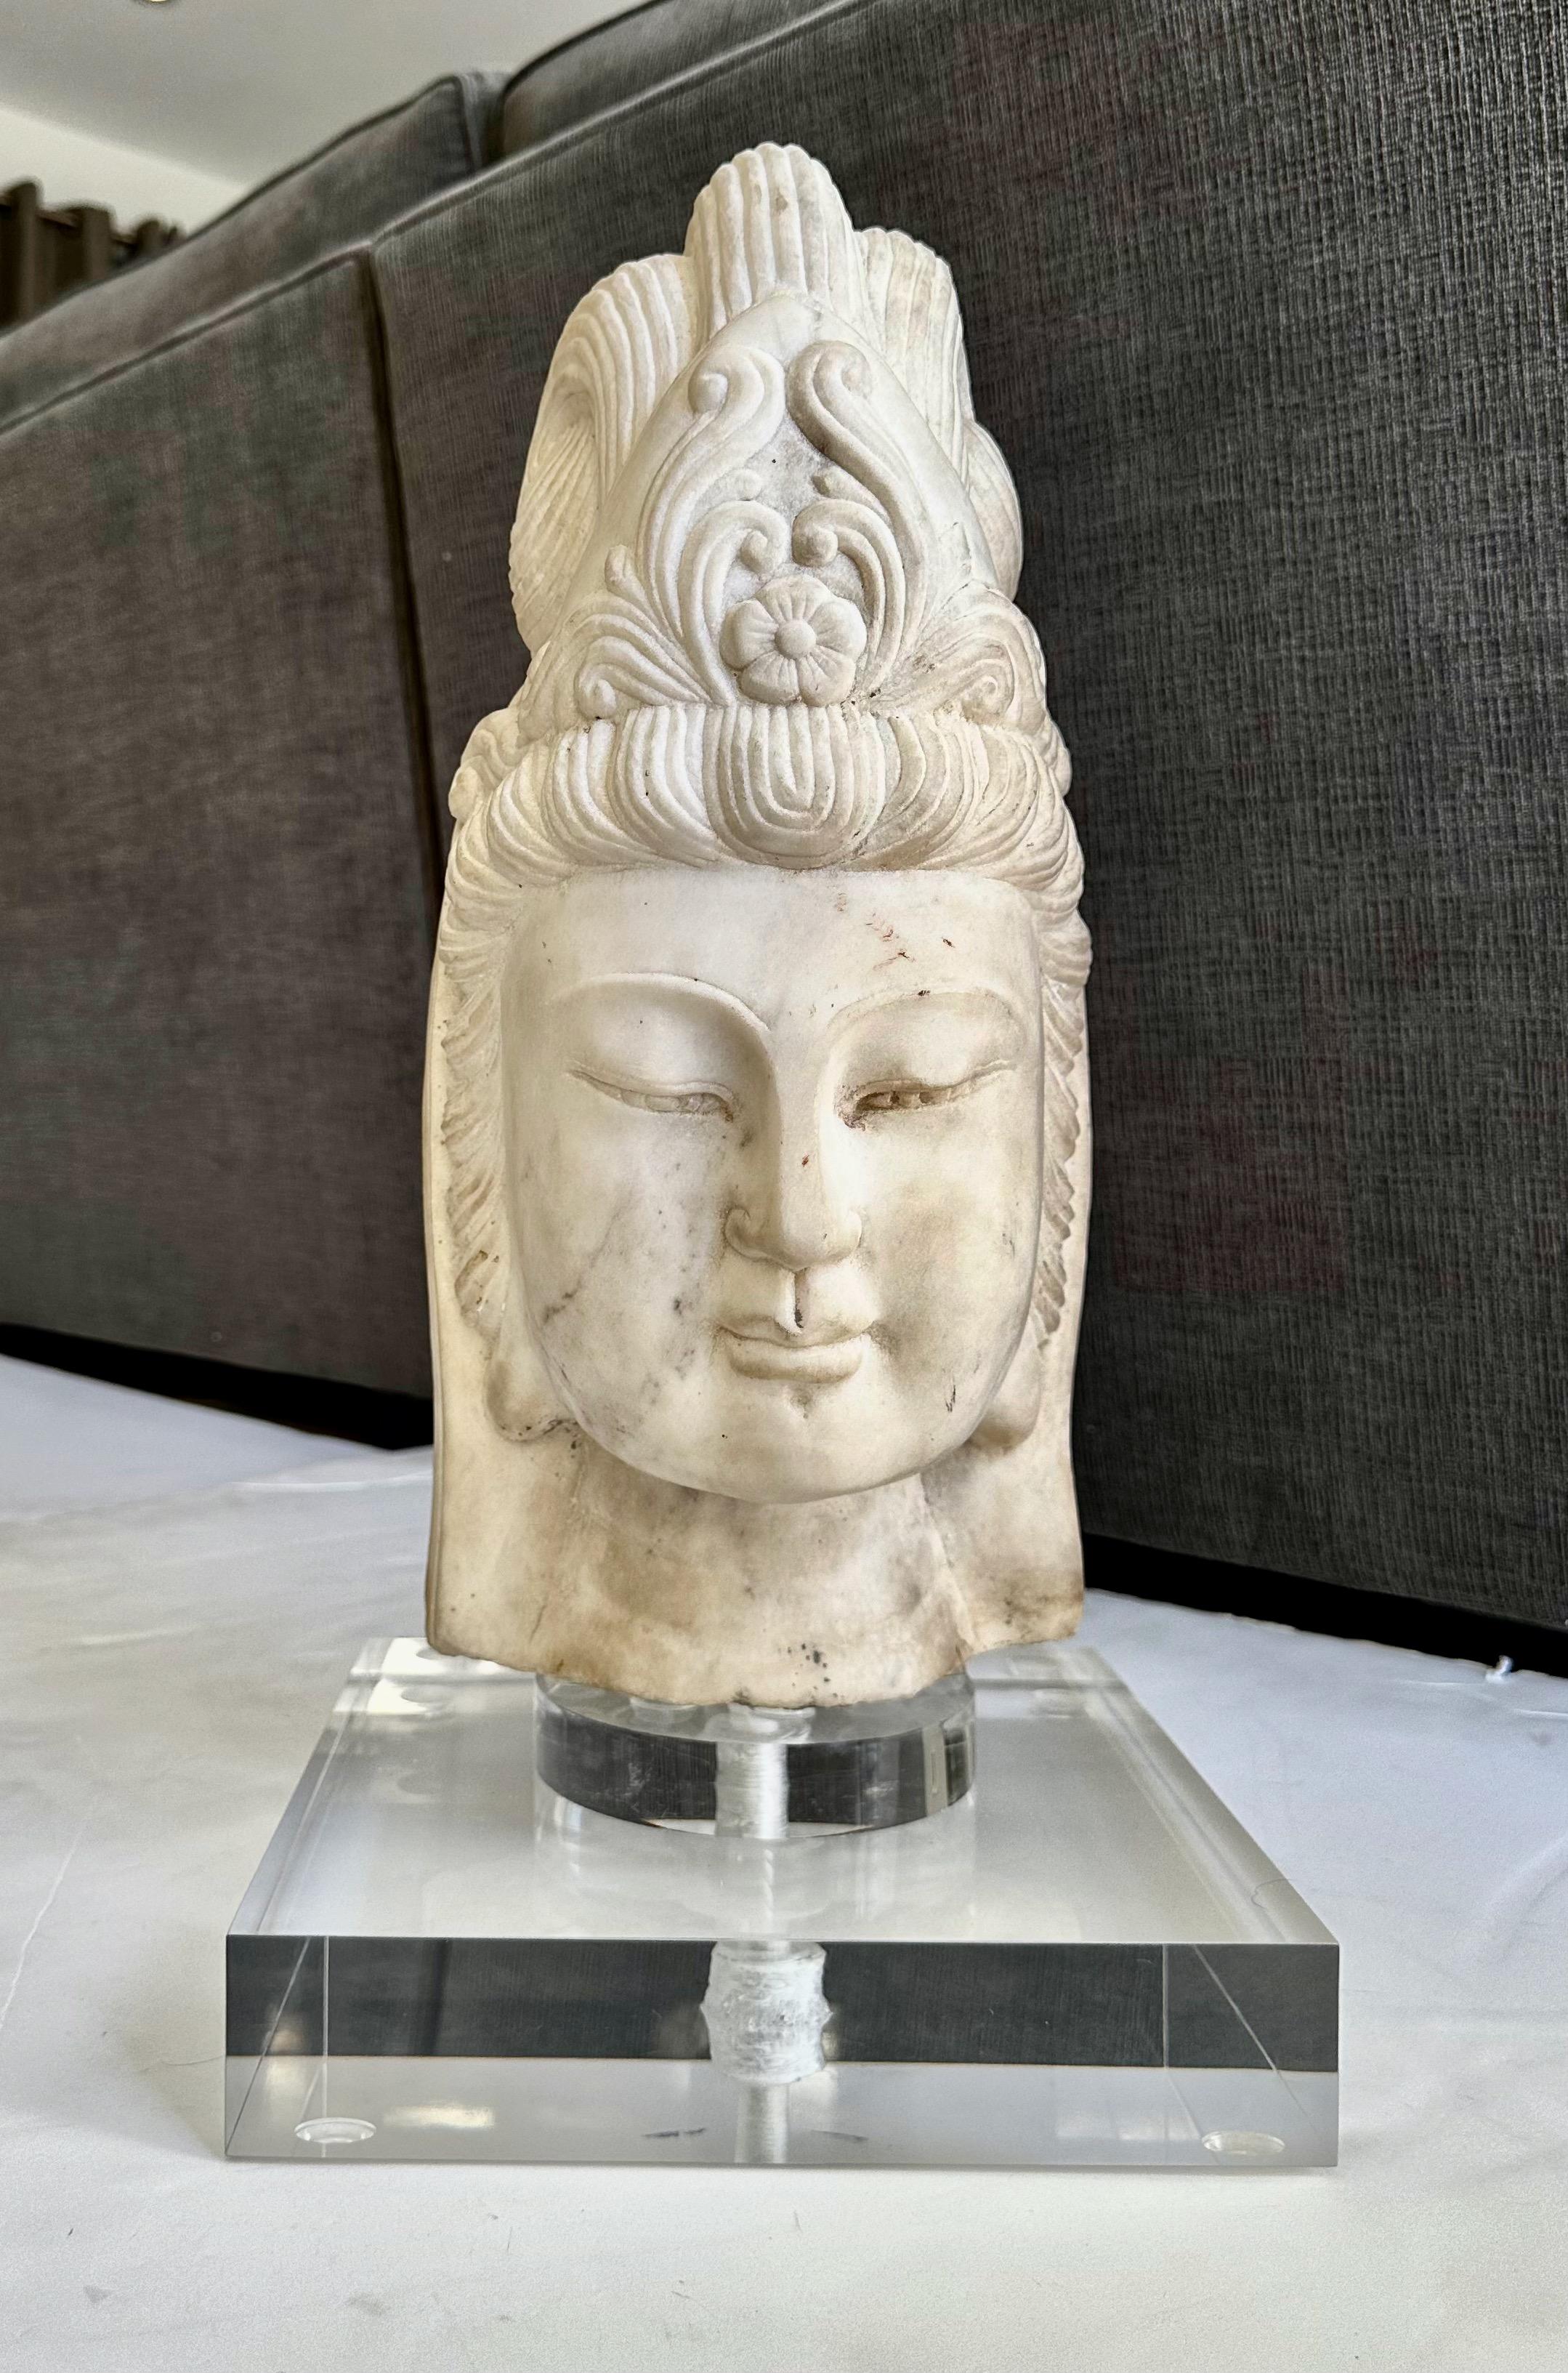 Wunderschön ausgeführtes handgeschnitztes Marmor-Buddha-Kopffragment von Quan Yin. Das jugendliche Gesicht ist friedlich und serbisch, umrahmt von einem kunstvoll geschnitzten Kopfschmuck. Ein auffälliges Kunstobjekt von hoher Verarbeitungsqualität.